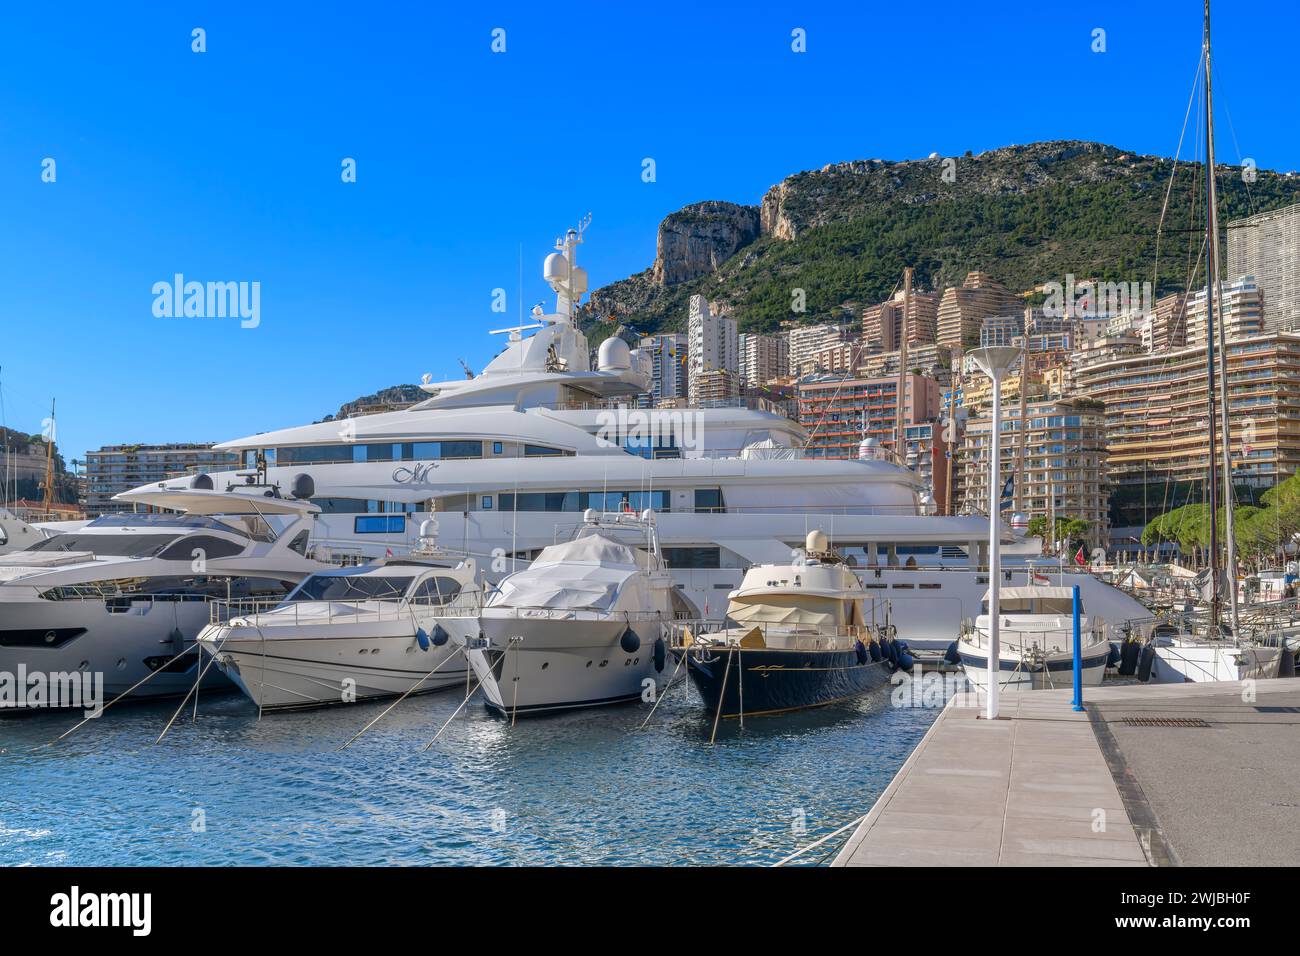 Porto turistico di Port Hercule, Monte Carlo nel Principato di Monaco. Da qui la città sorge sulle colline alle spalle. Intrecciato con strade tortuose e case intelligenti. Foto Stock